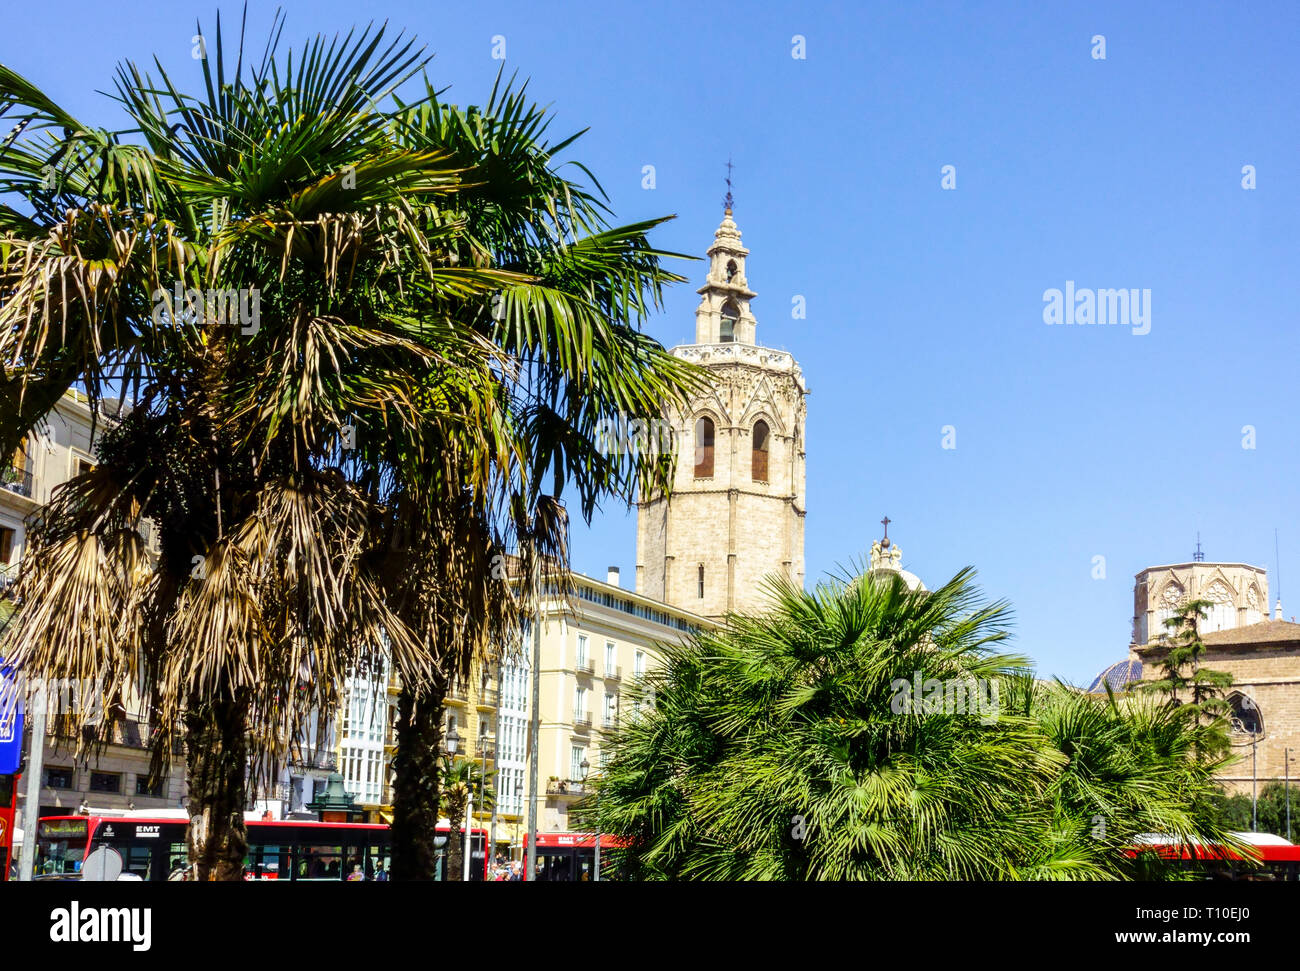 Valencia, la Plaza de la Reina, el campanario cuadrado, Micalet, el Miguelete, el Miguelete, la Catedral de Valencia, España Foto de stock